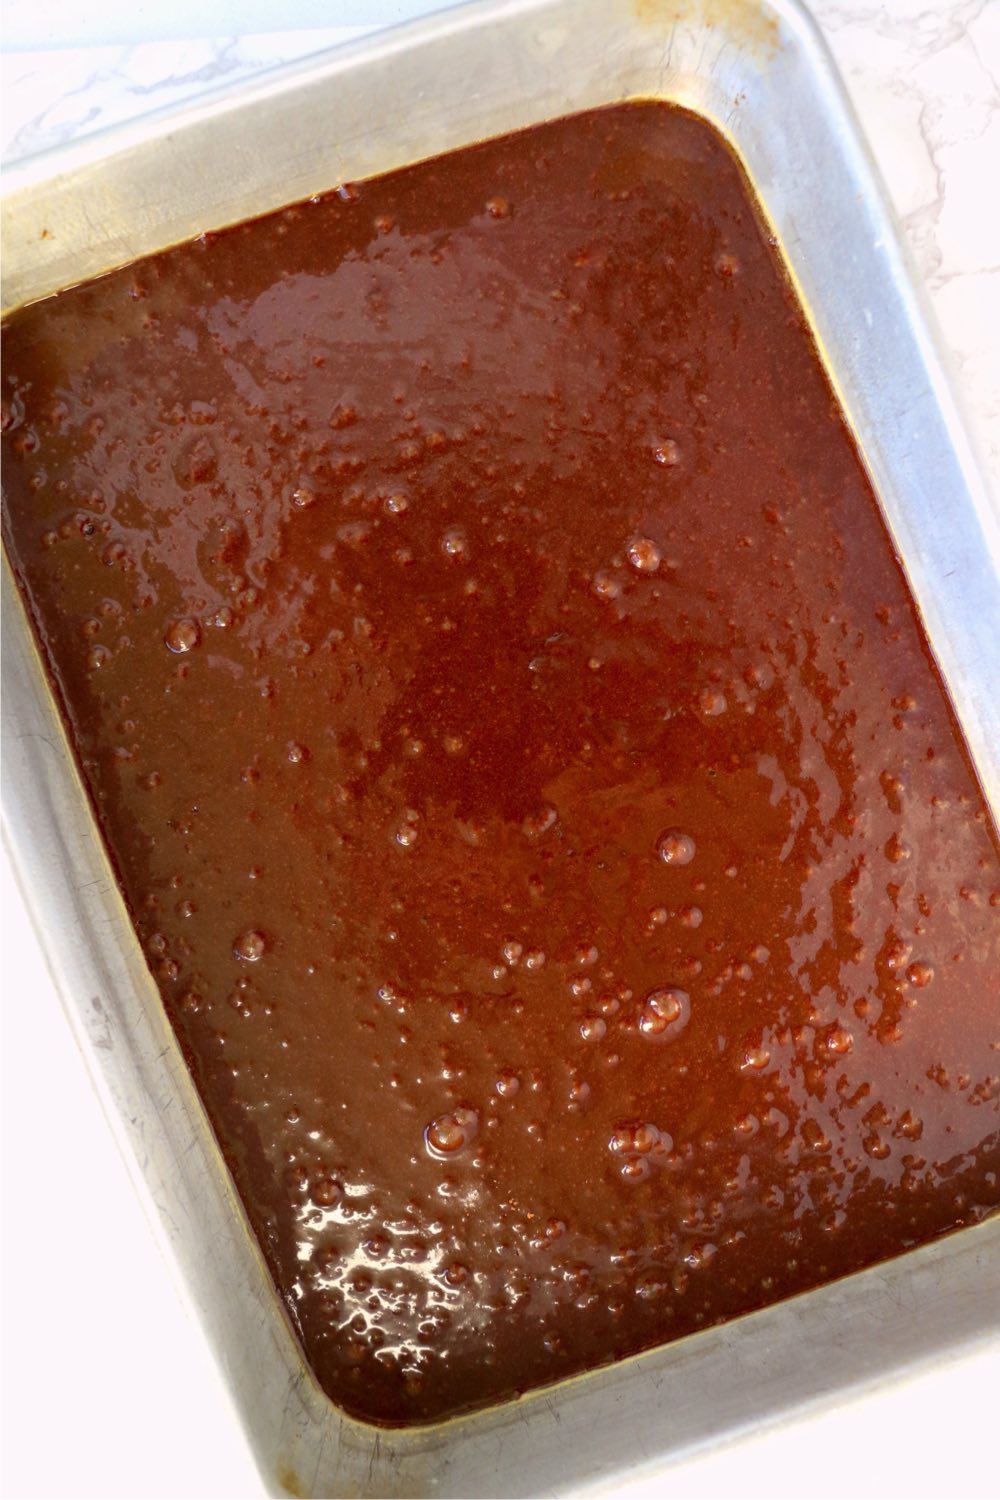 pan of brownie batter